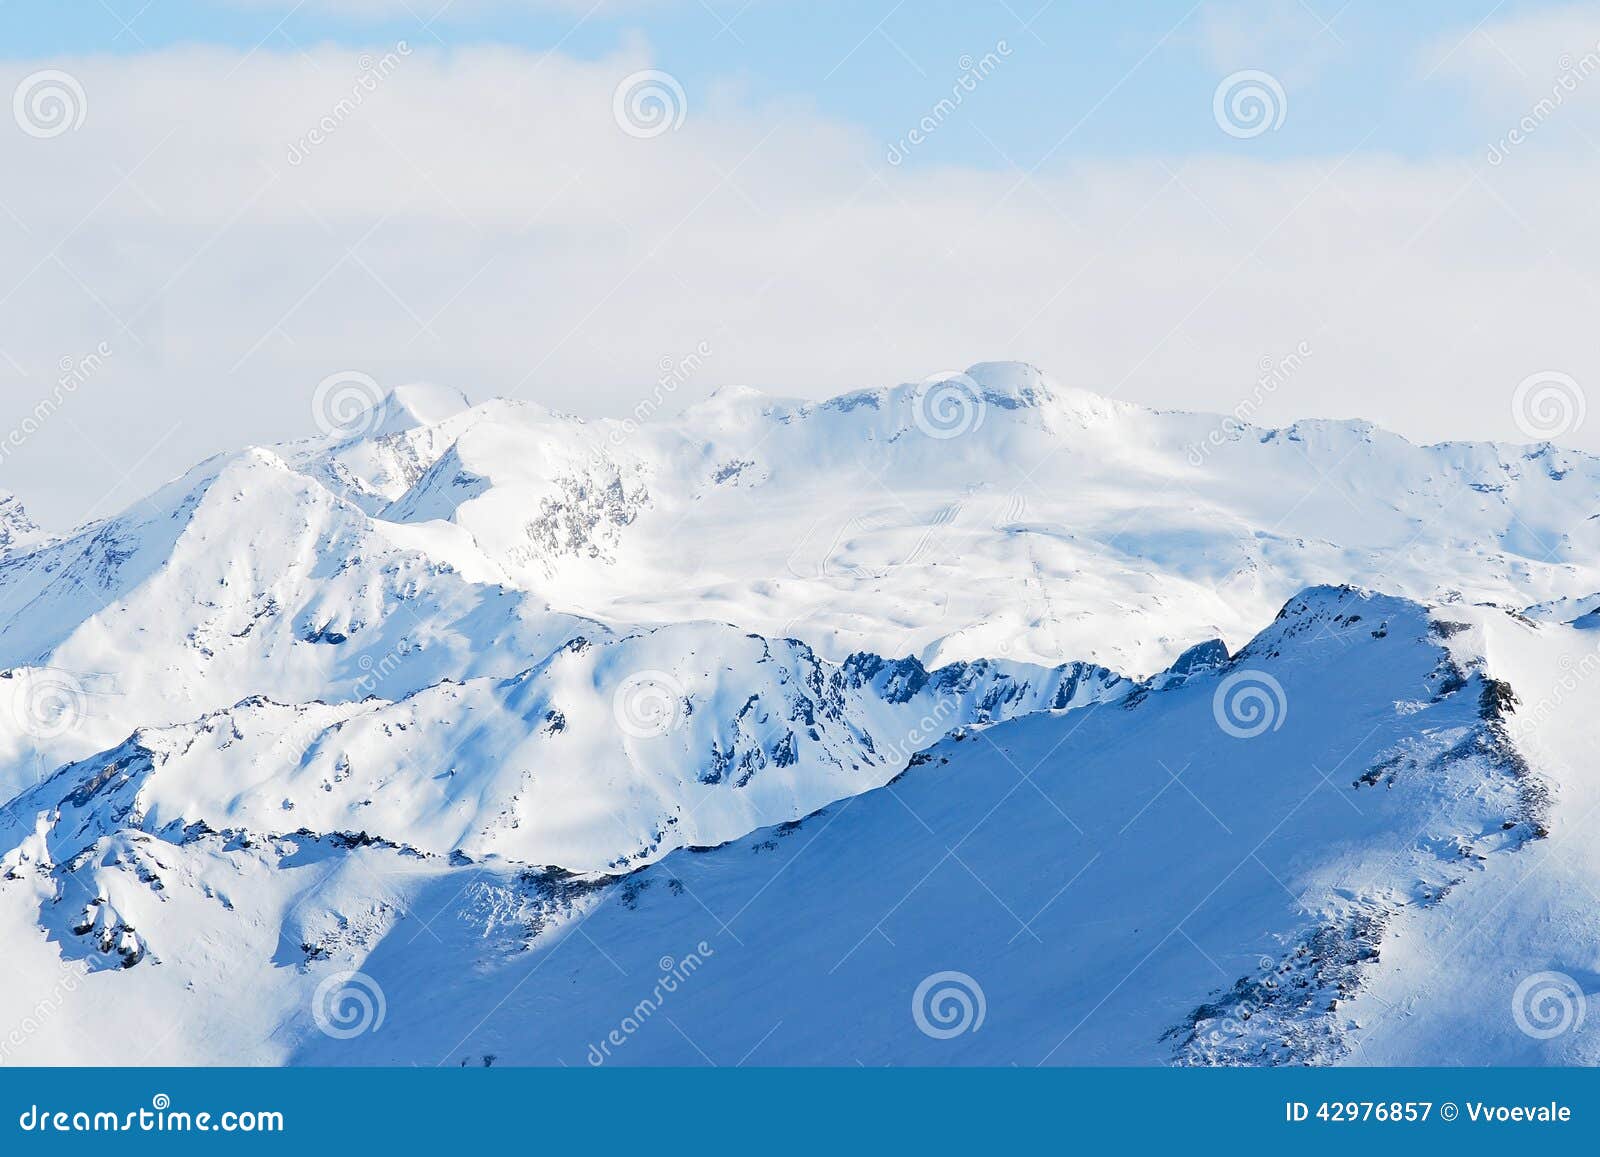 snow mountains in paradiski skiing region